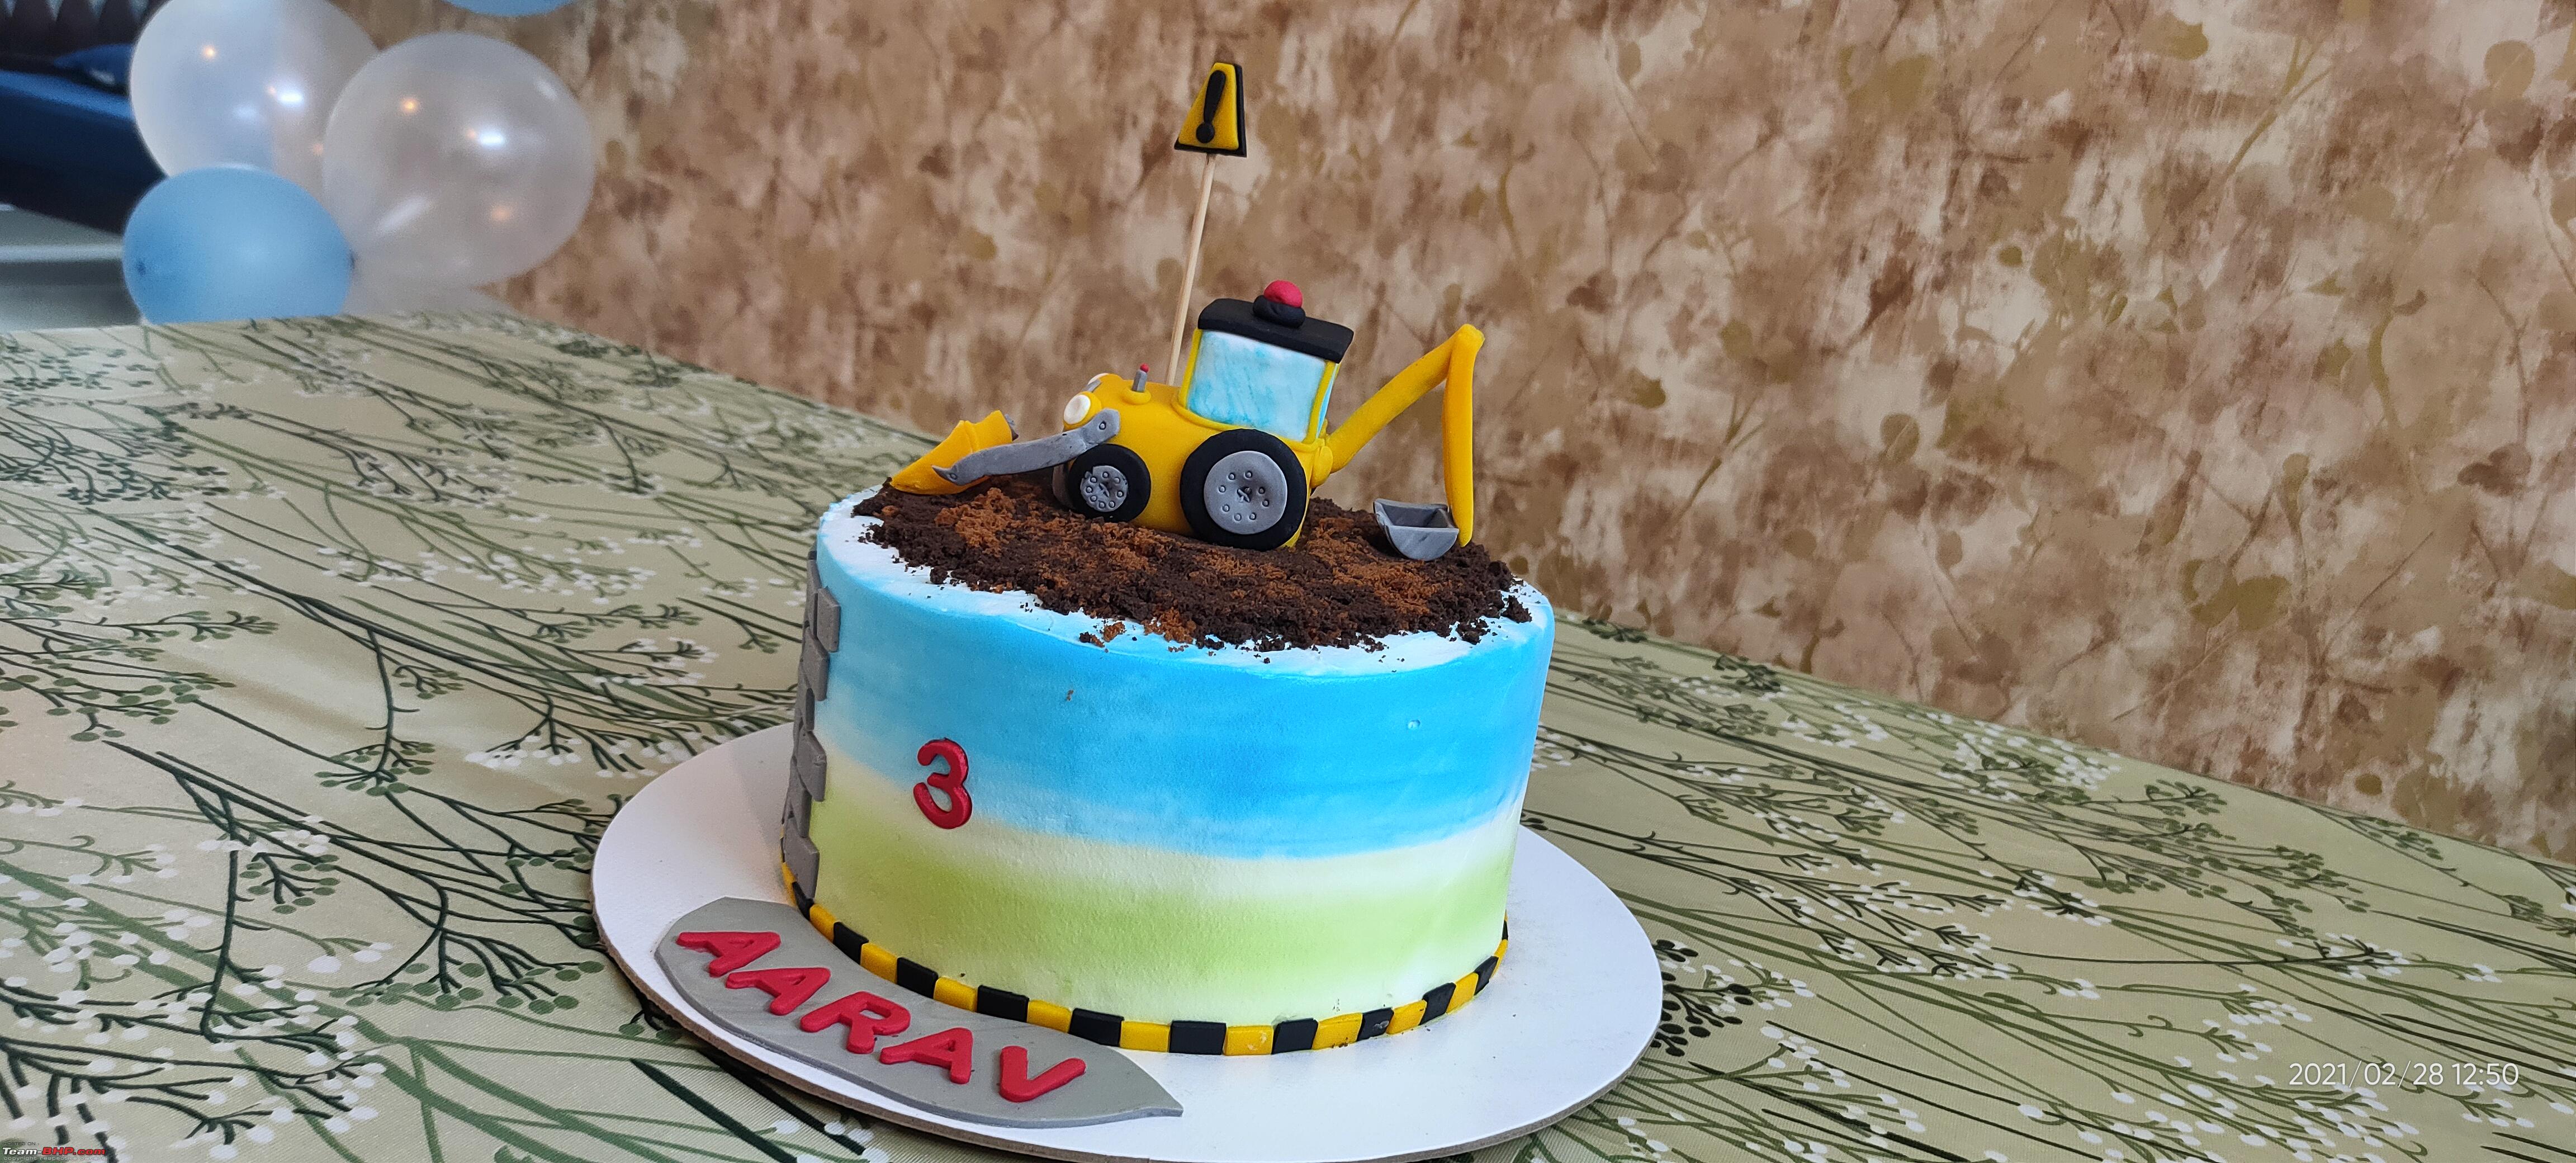 JCB Cake Design Images (JCB Birthday Cake Ideas) | Cake, Construction cake,  Cool birthday cakes